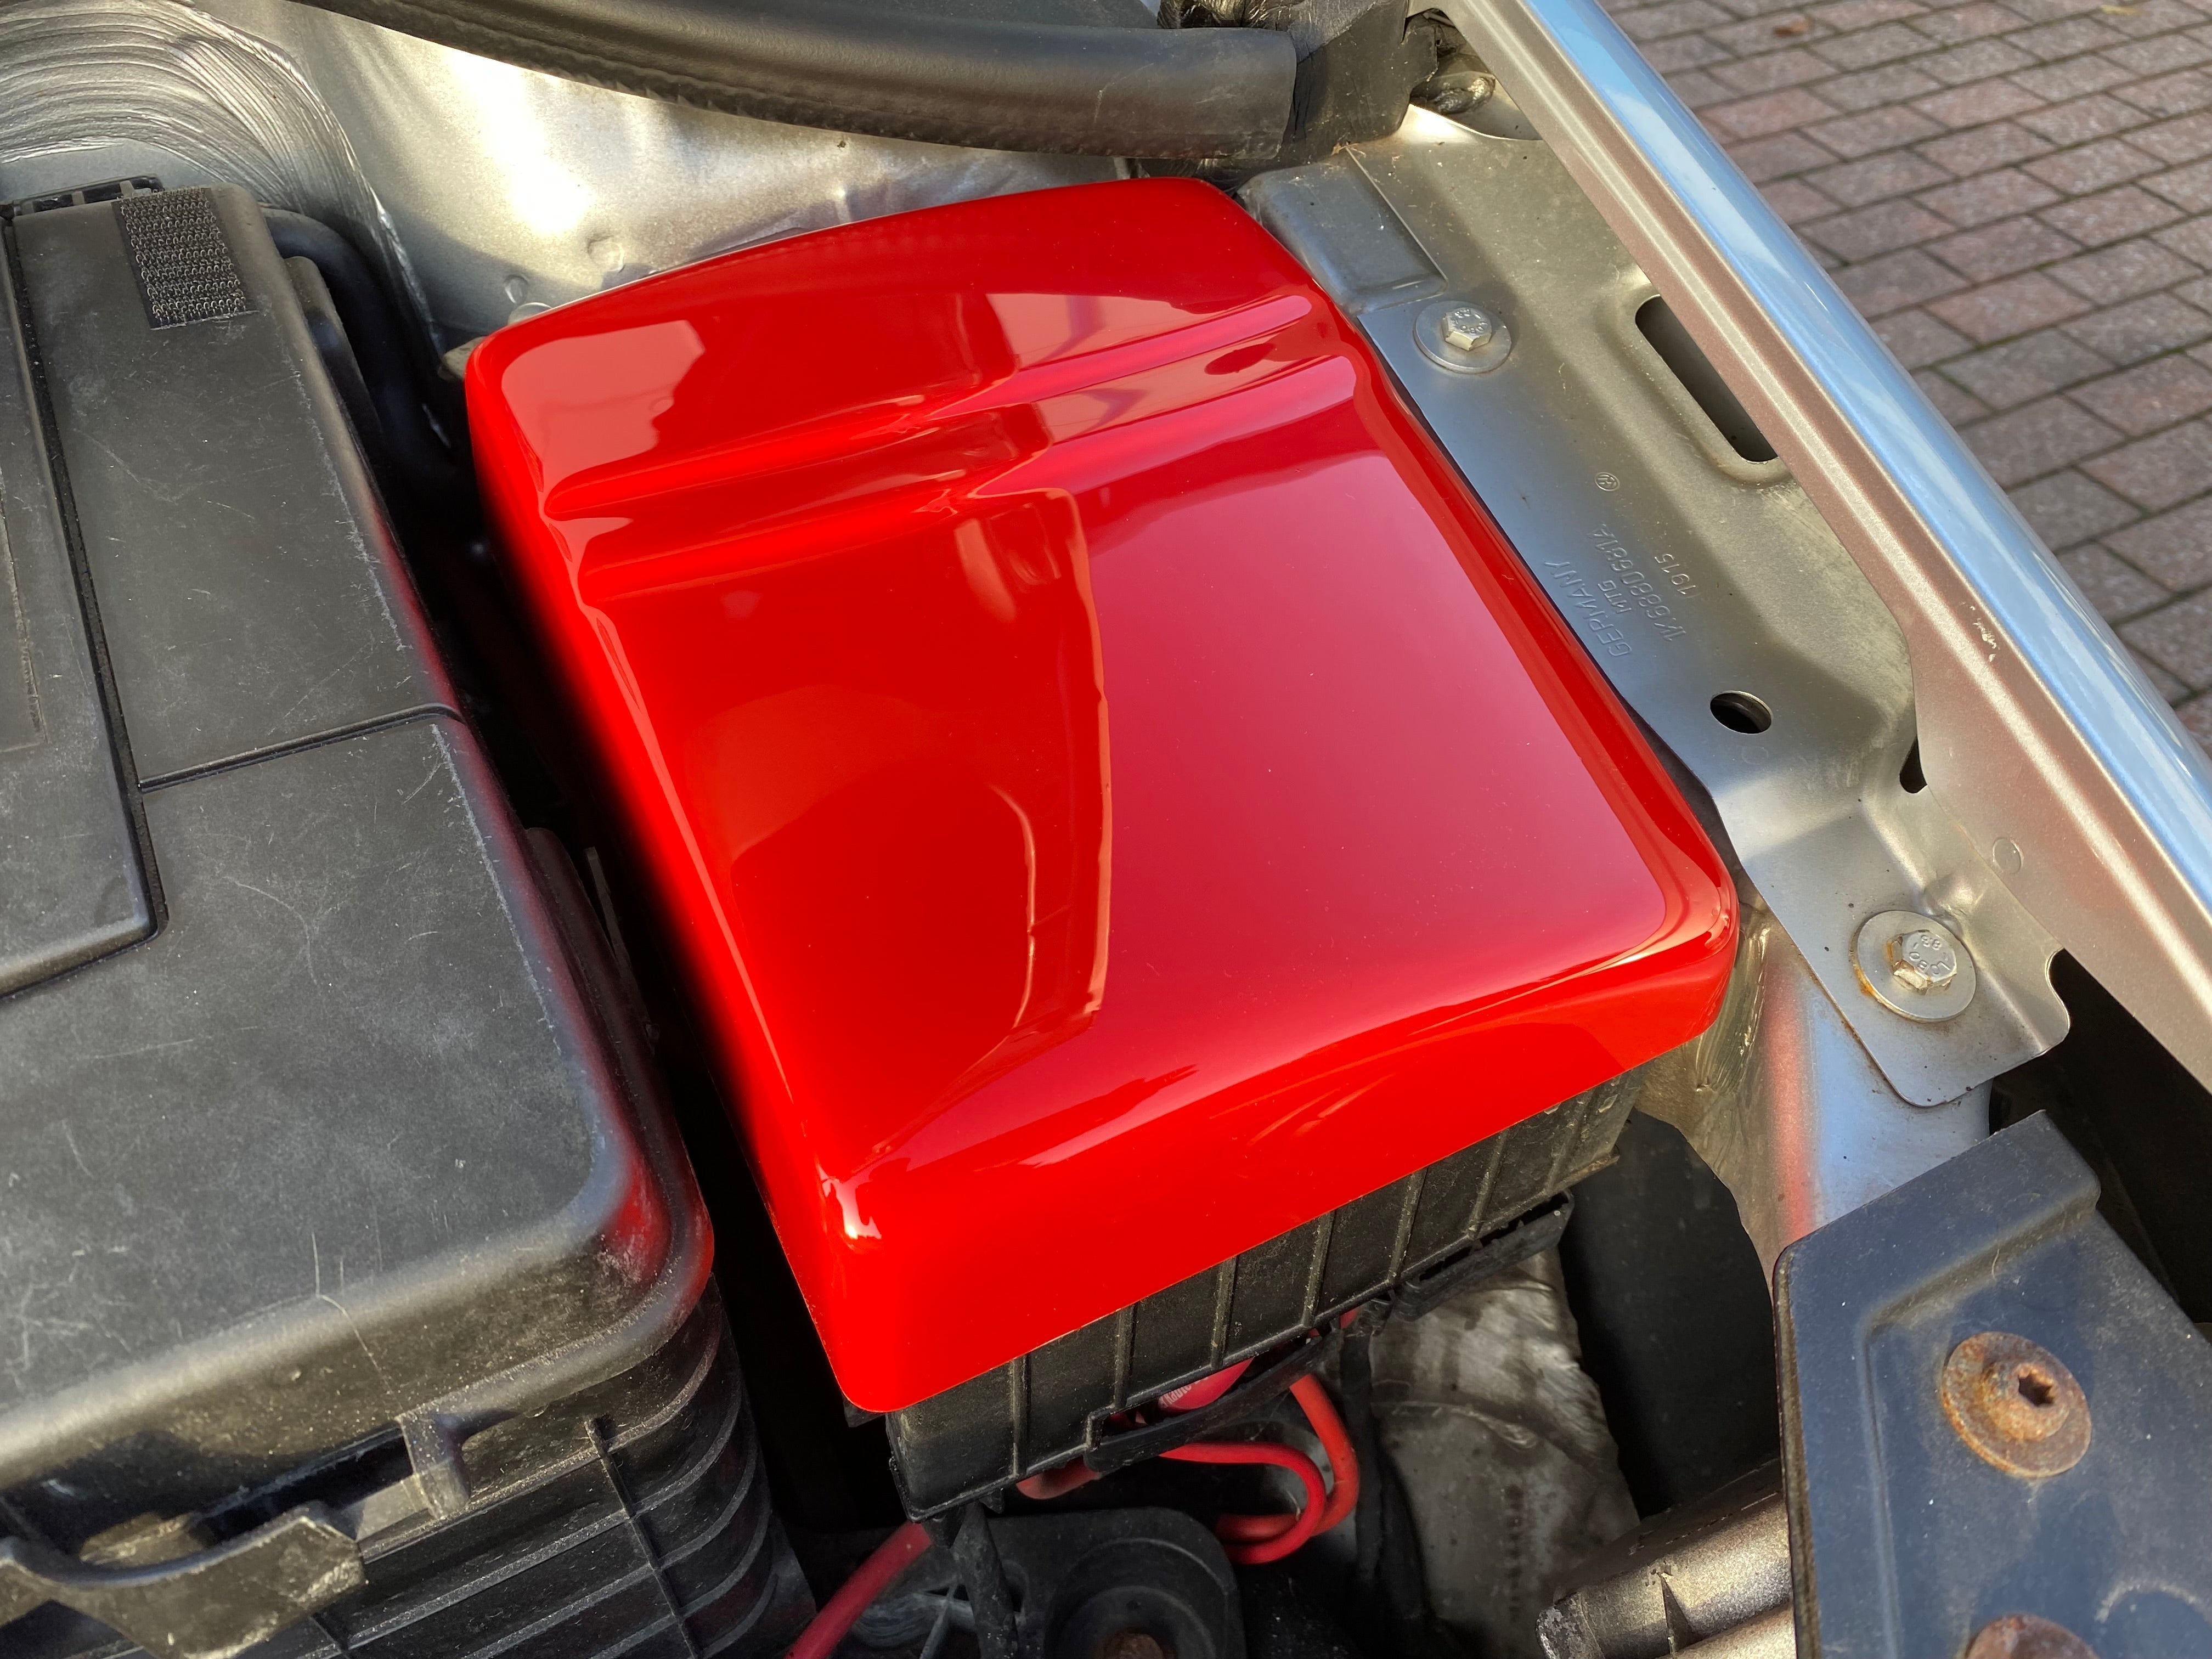 Proform Fuse Box Cover - Volkswagen Scirocco (Plastic Finishes)